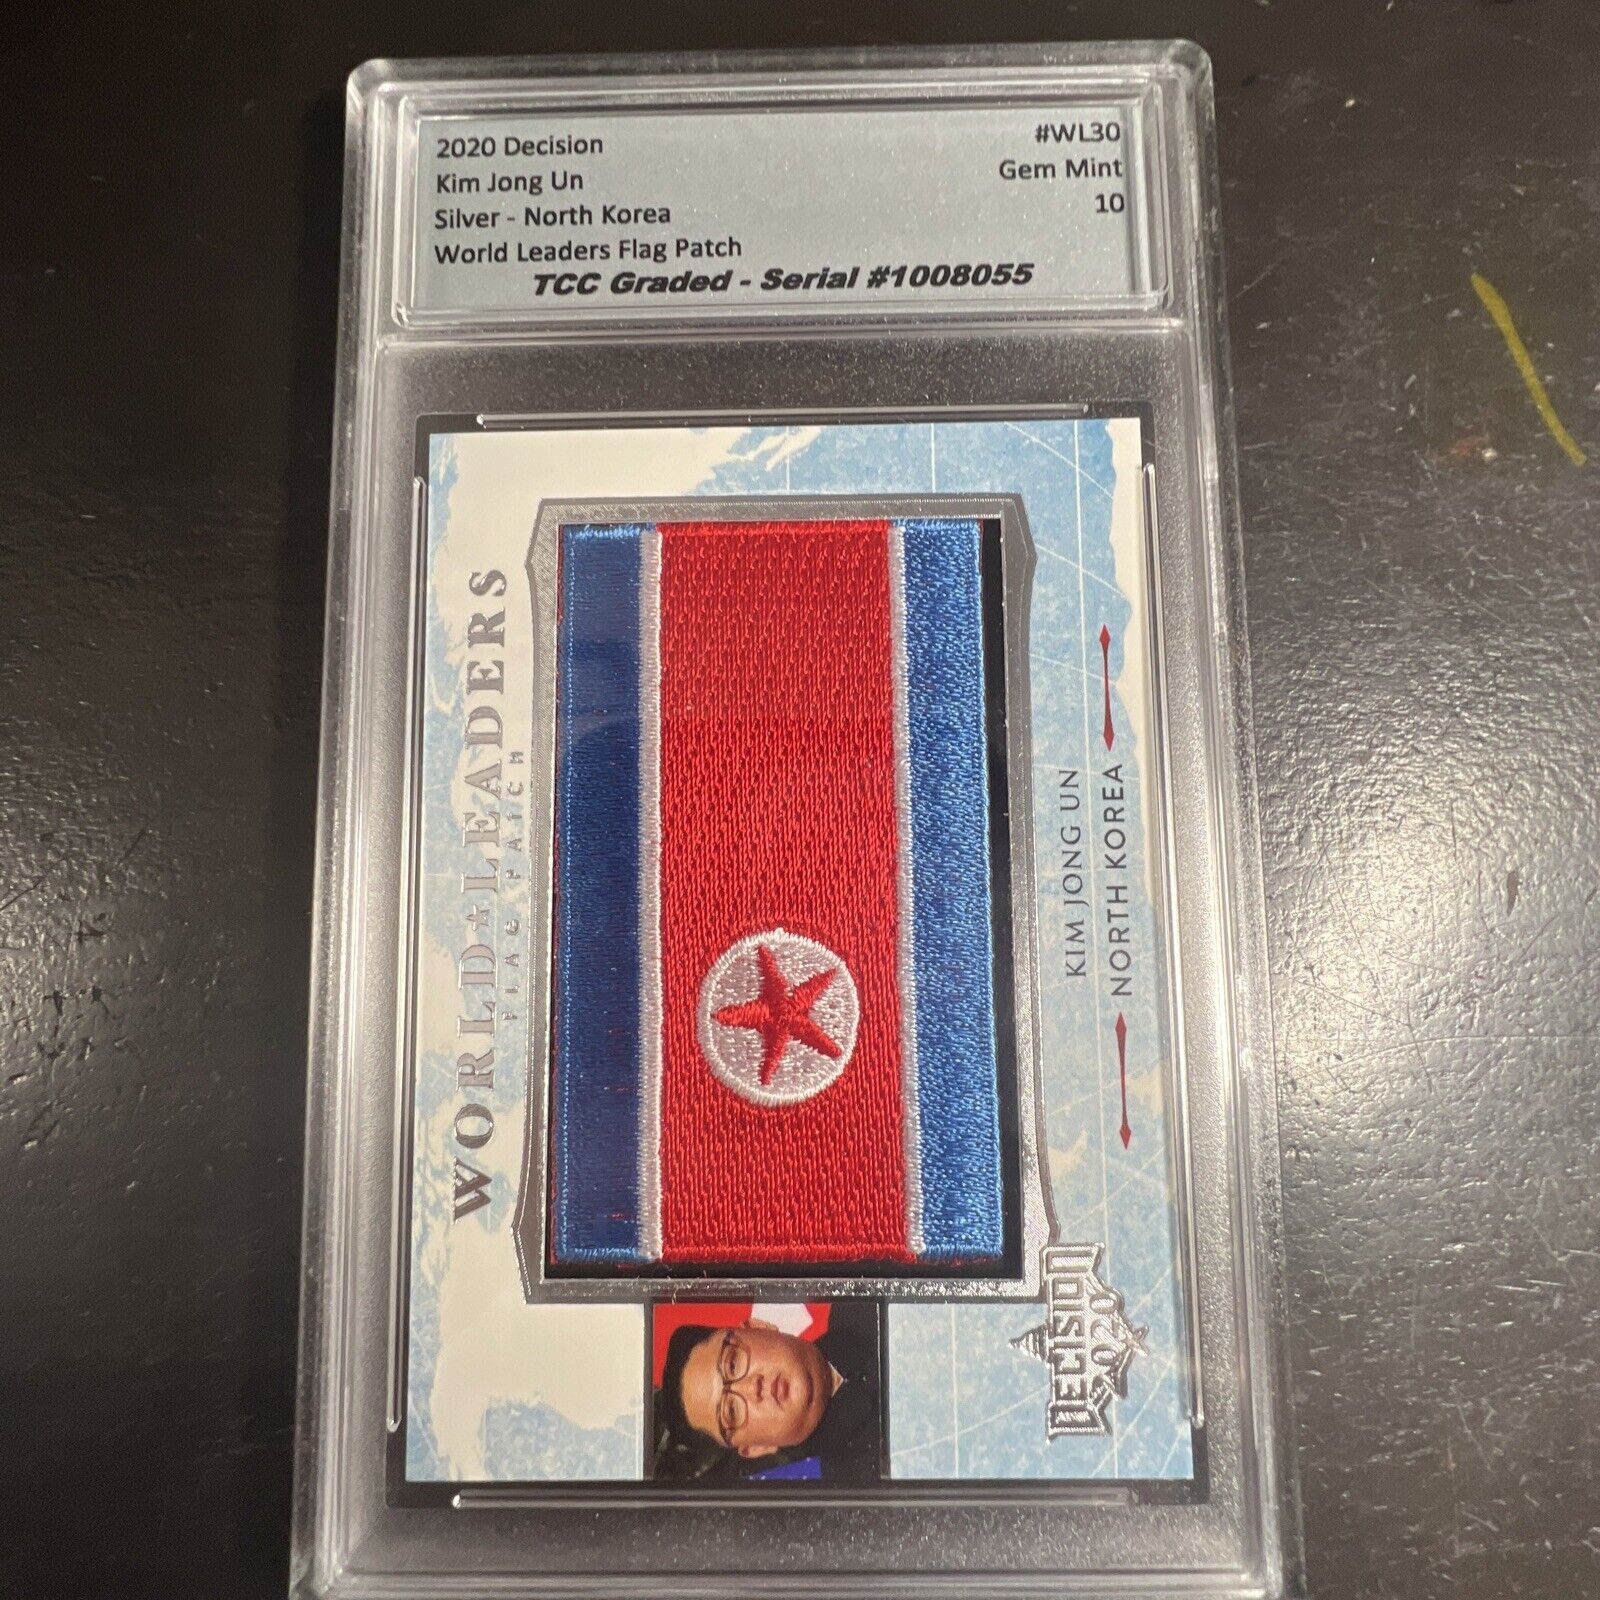 2020 Decision Kim Jong Un World Leaders Flag Patch TCC Graded Gem Mint 10